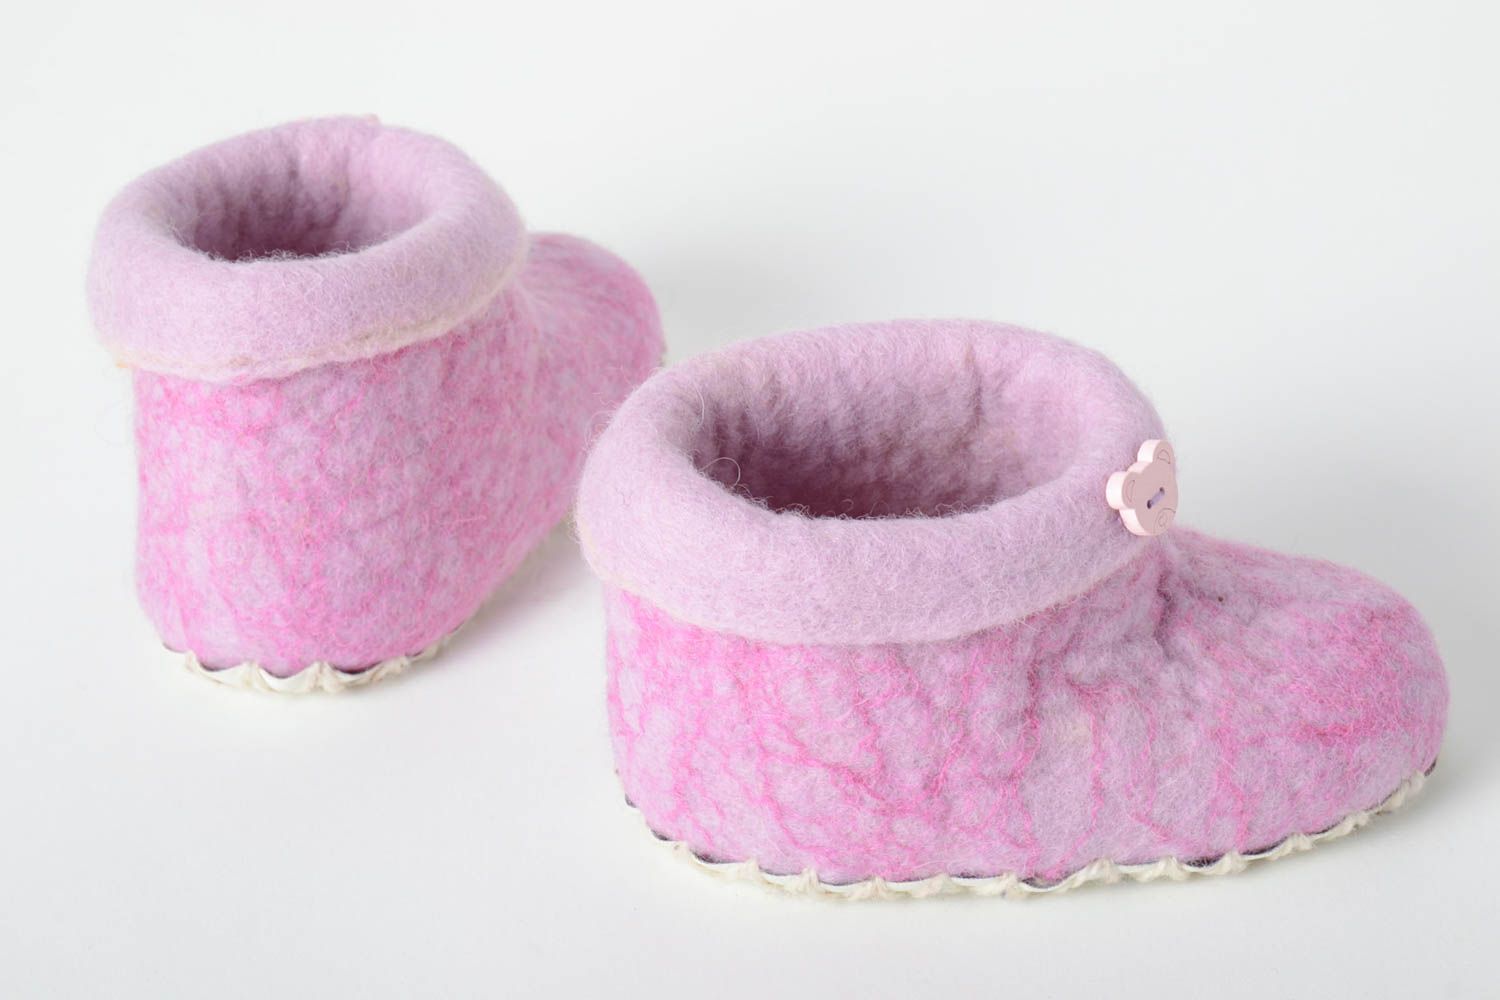 Handmade gefilzte Pantoffeln schöne Hausschuhe warme Kinderhausschuhe rosa foto 3